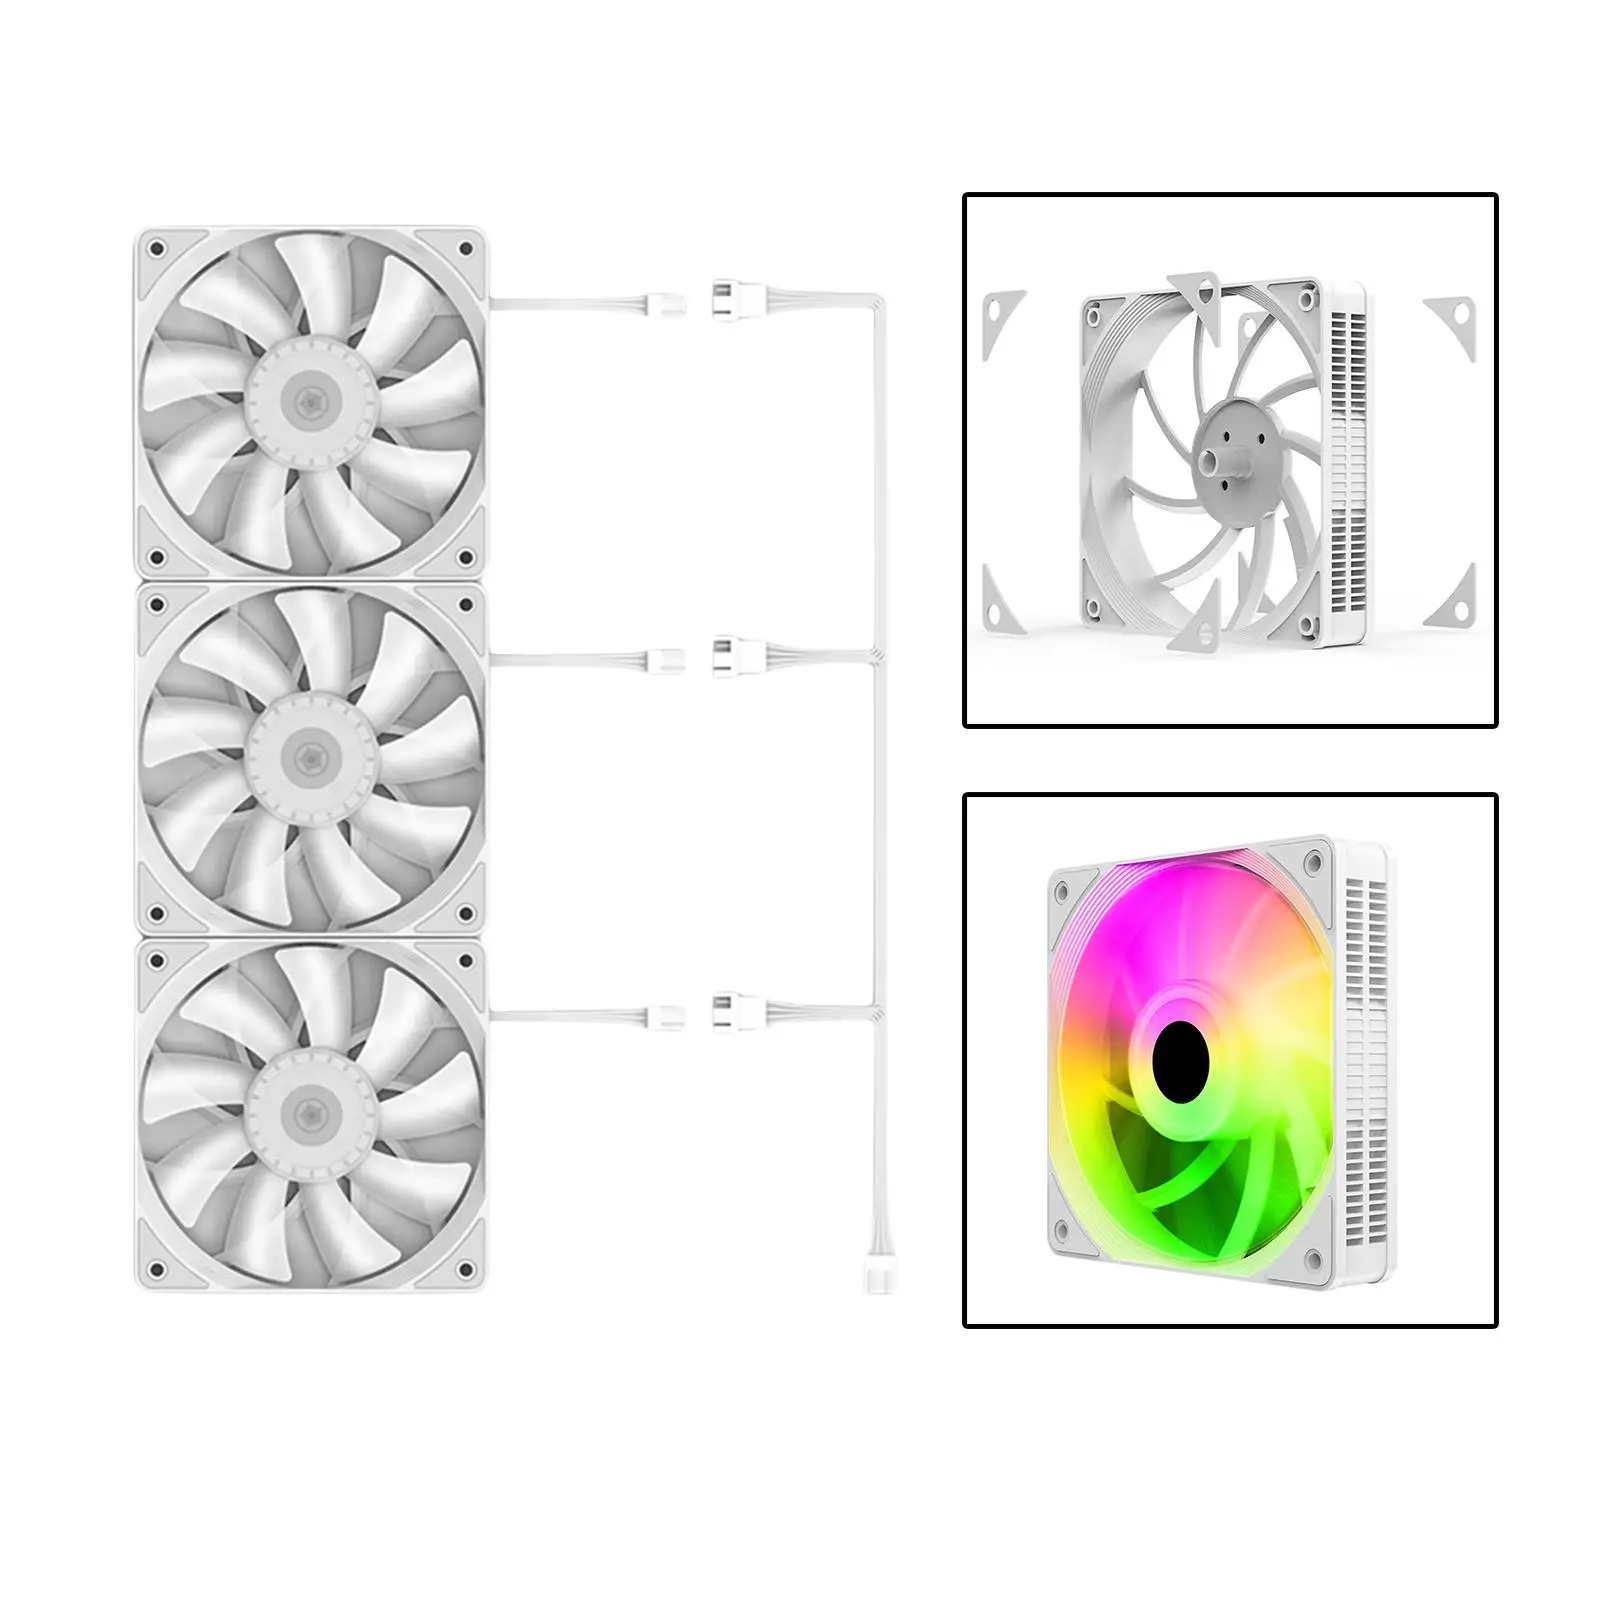 3Pcs 120mm Case Cooling Fan 1200RPM RGB LED Lighting Colorful Computer Case Fans